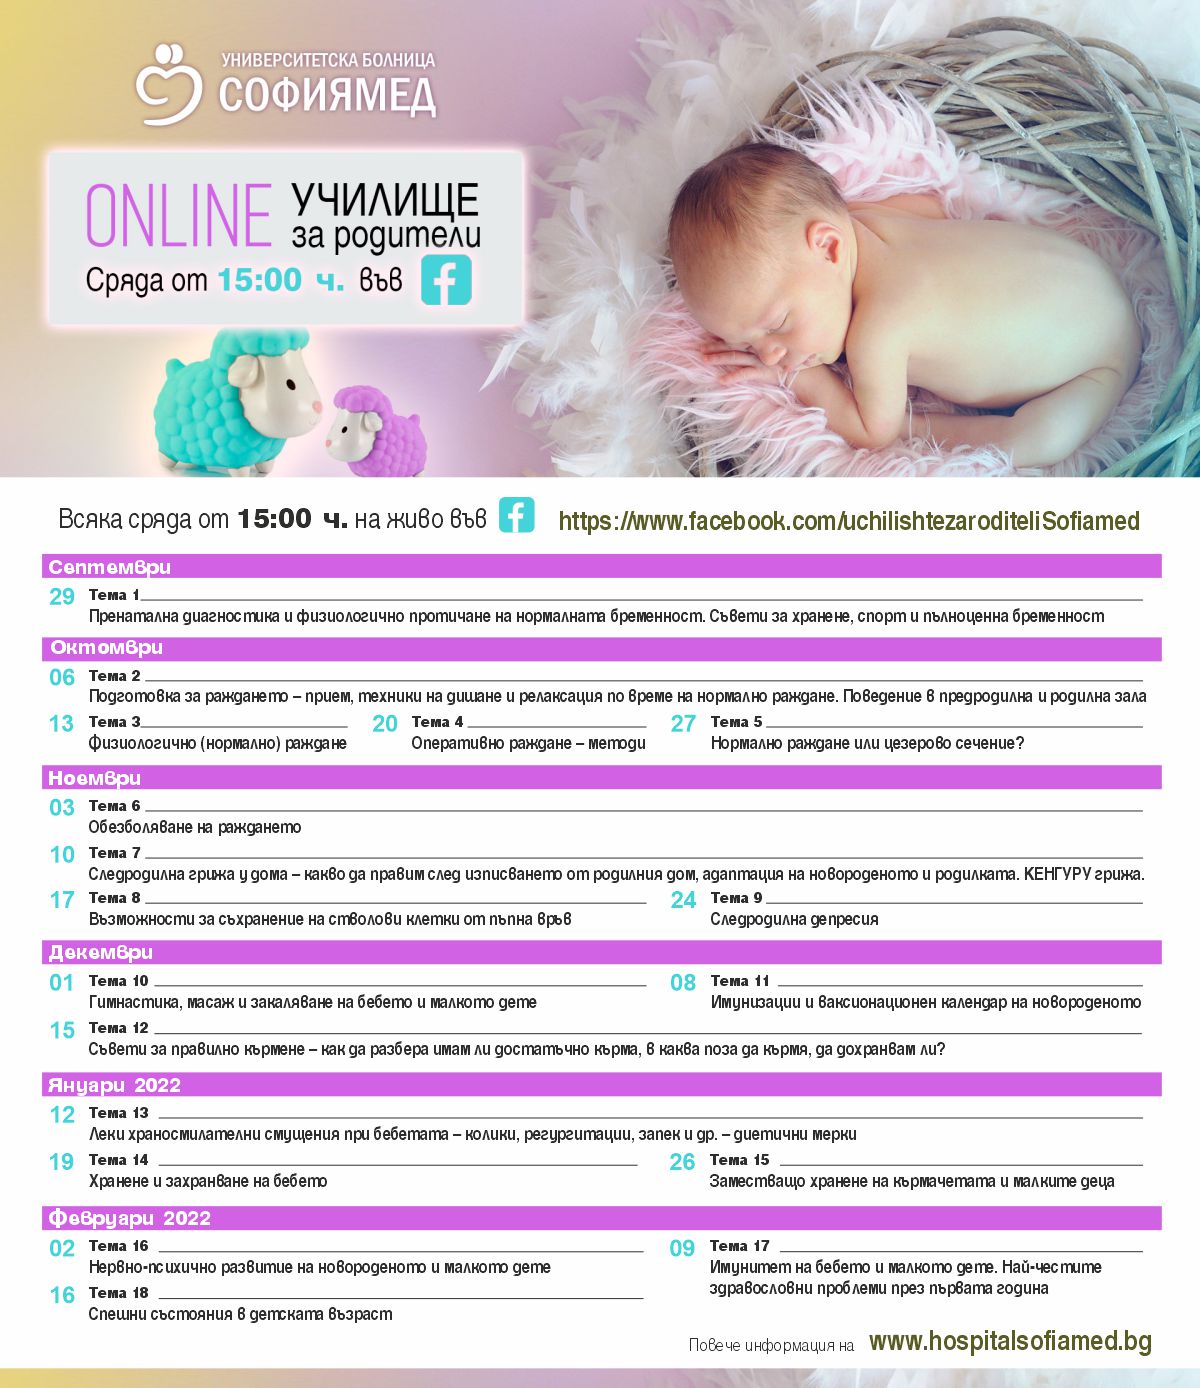 Масаж и гимнастика на новороденото и съвети за повишаване на имунитета на малкото дете, сред лекциите в новата програма на Online Училище за родители „Софиямед“